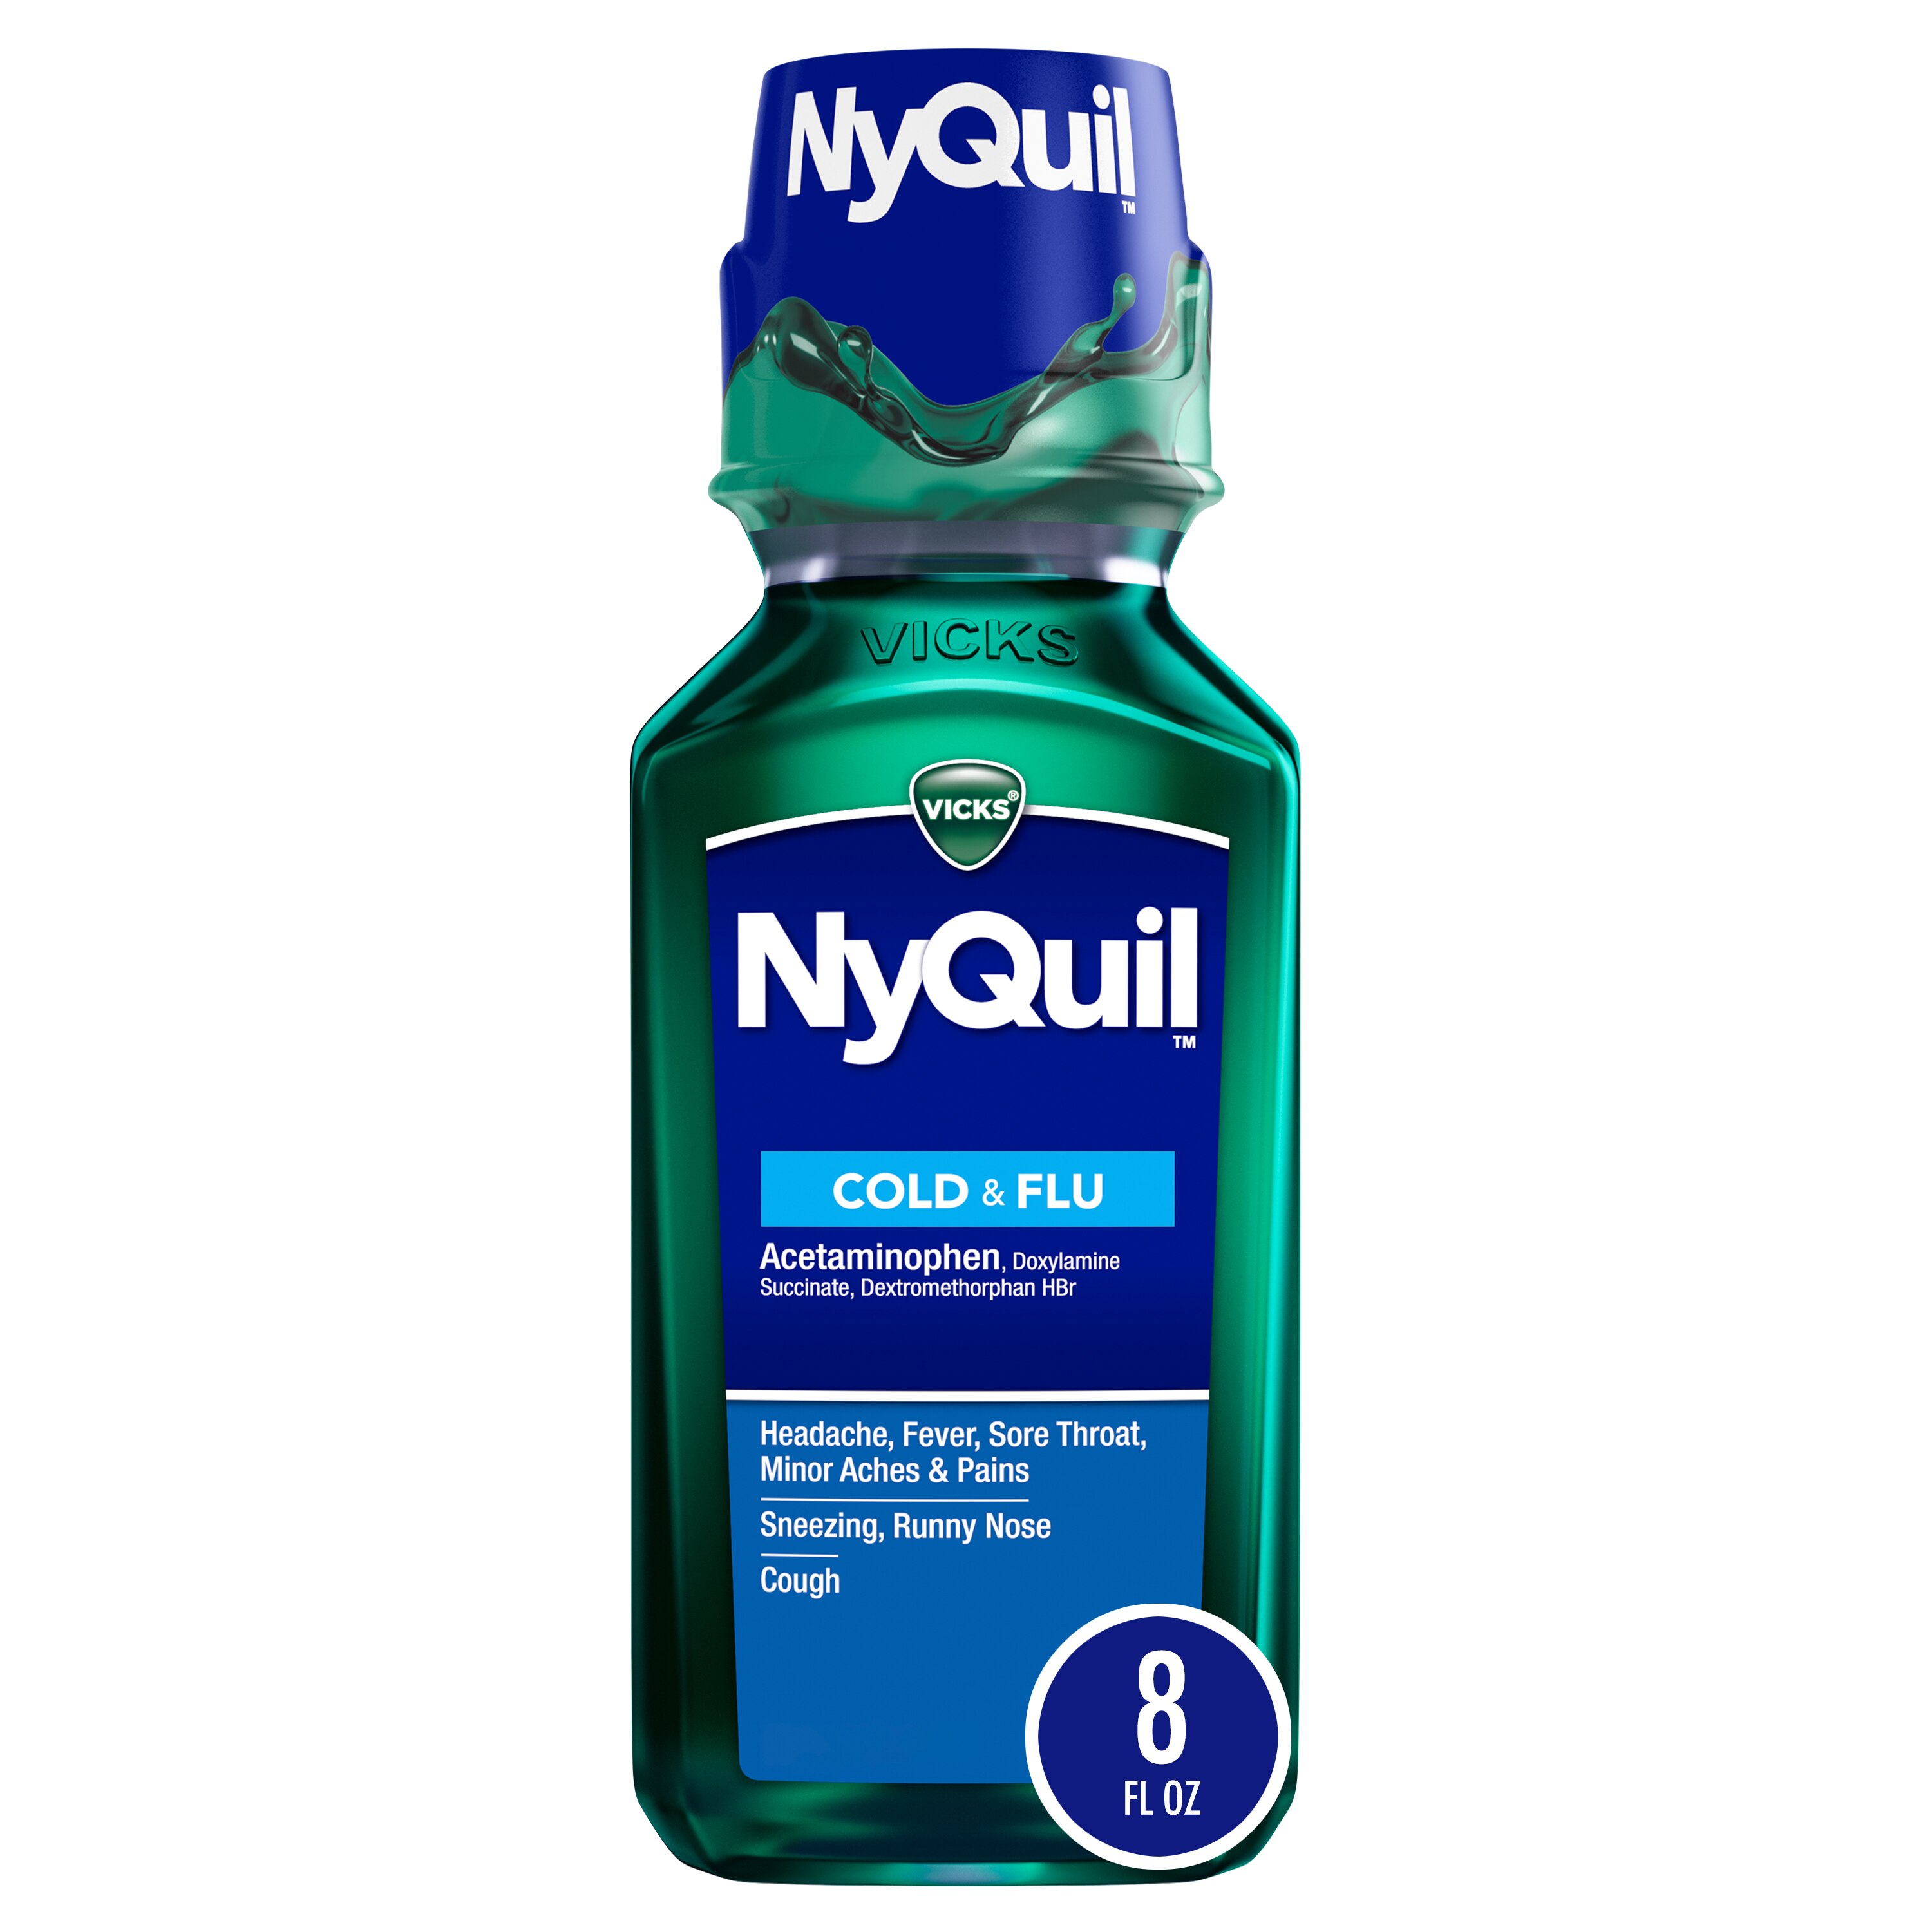 Vicks NyQuil - Medicamento para el resfriado y la gripe, sabor Original, alivia la tos, el dolor de garganta, la fiebre y el goteo nasal durante la noche, 8 oz líq.